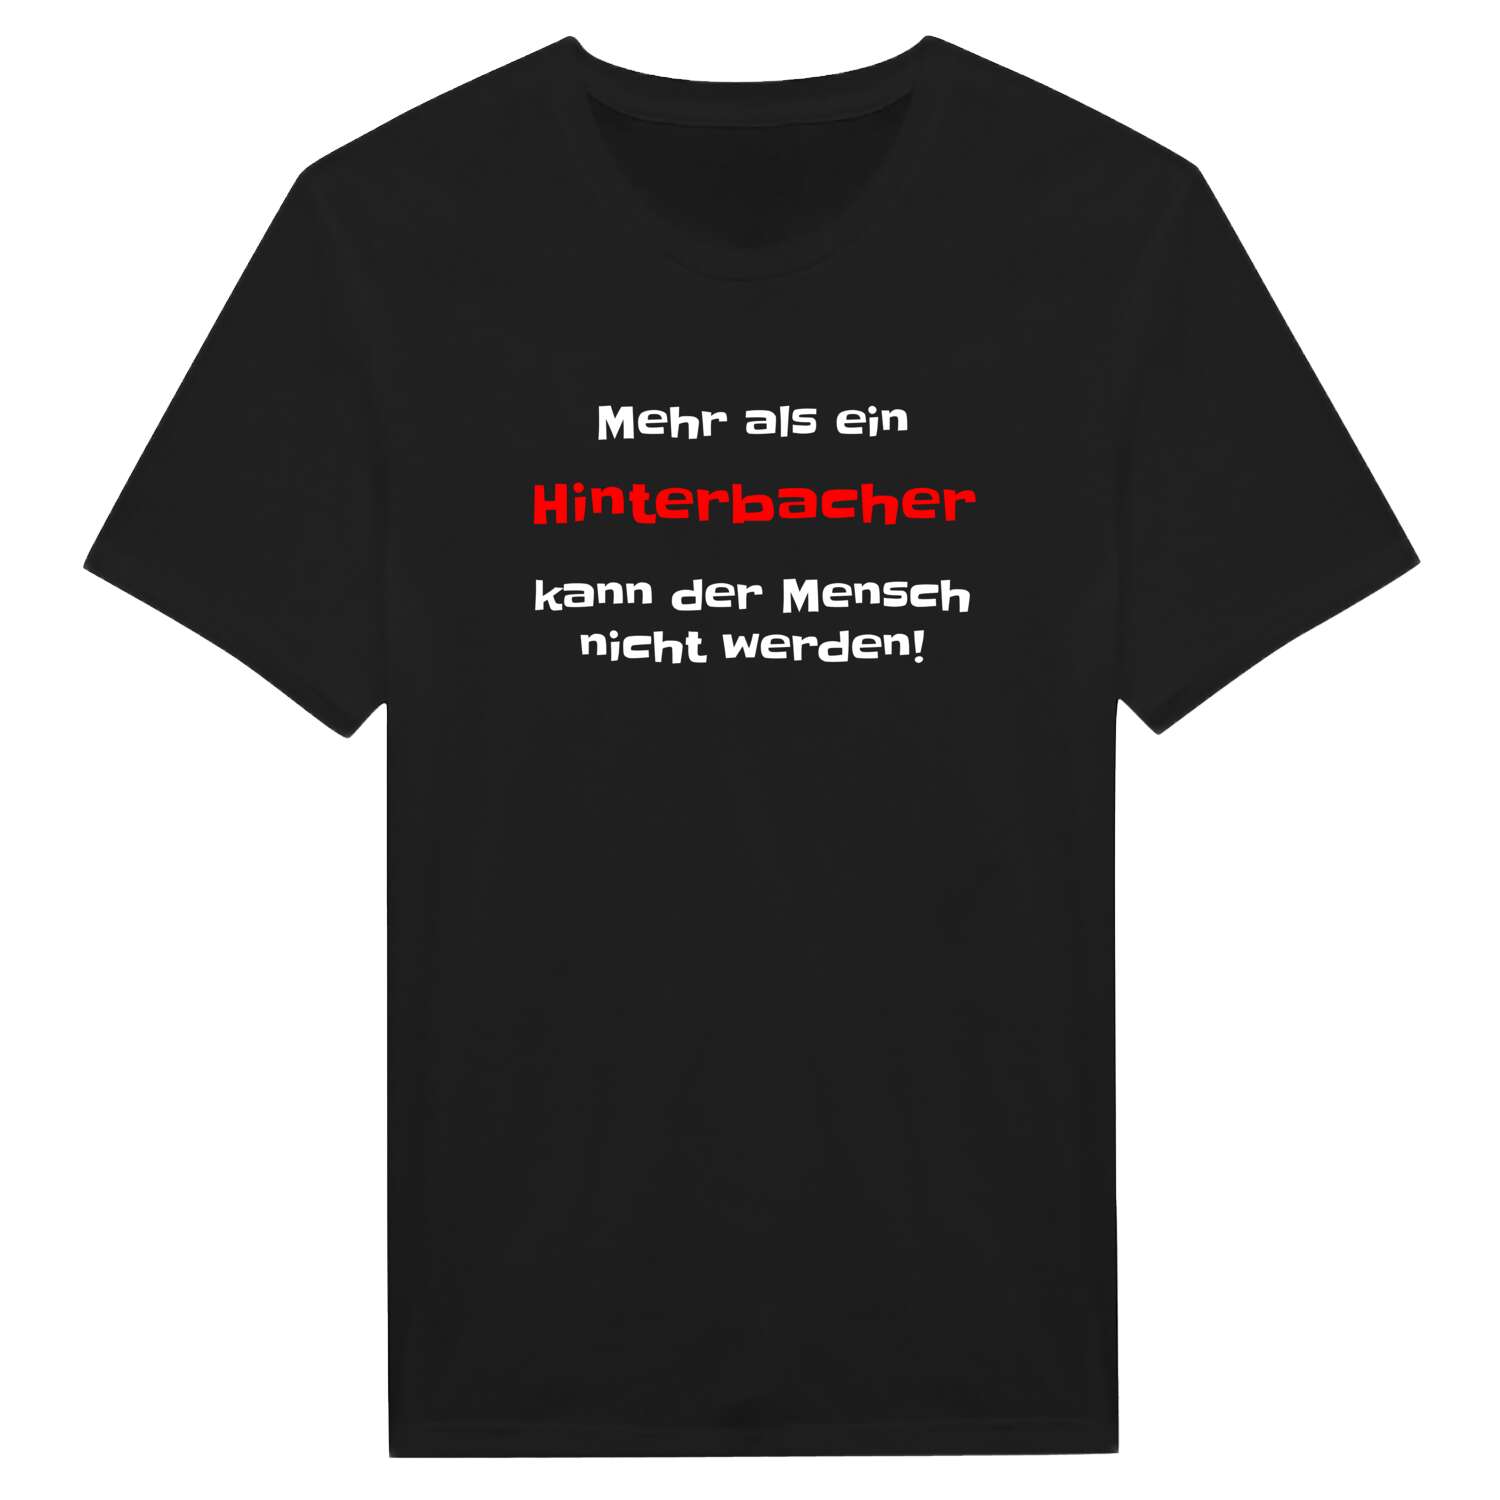 Hinterbach T-Shirt »Mehr als ein«